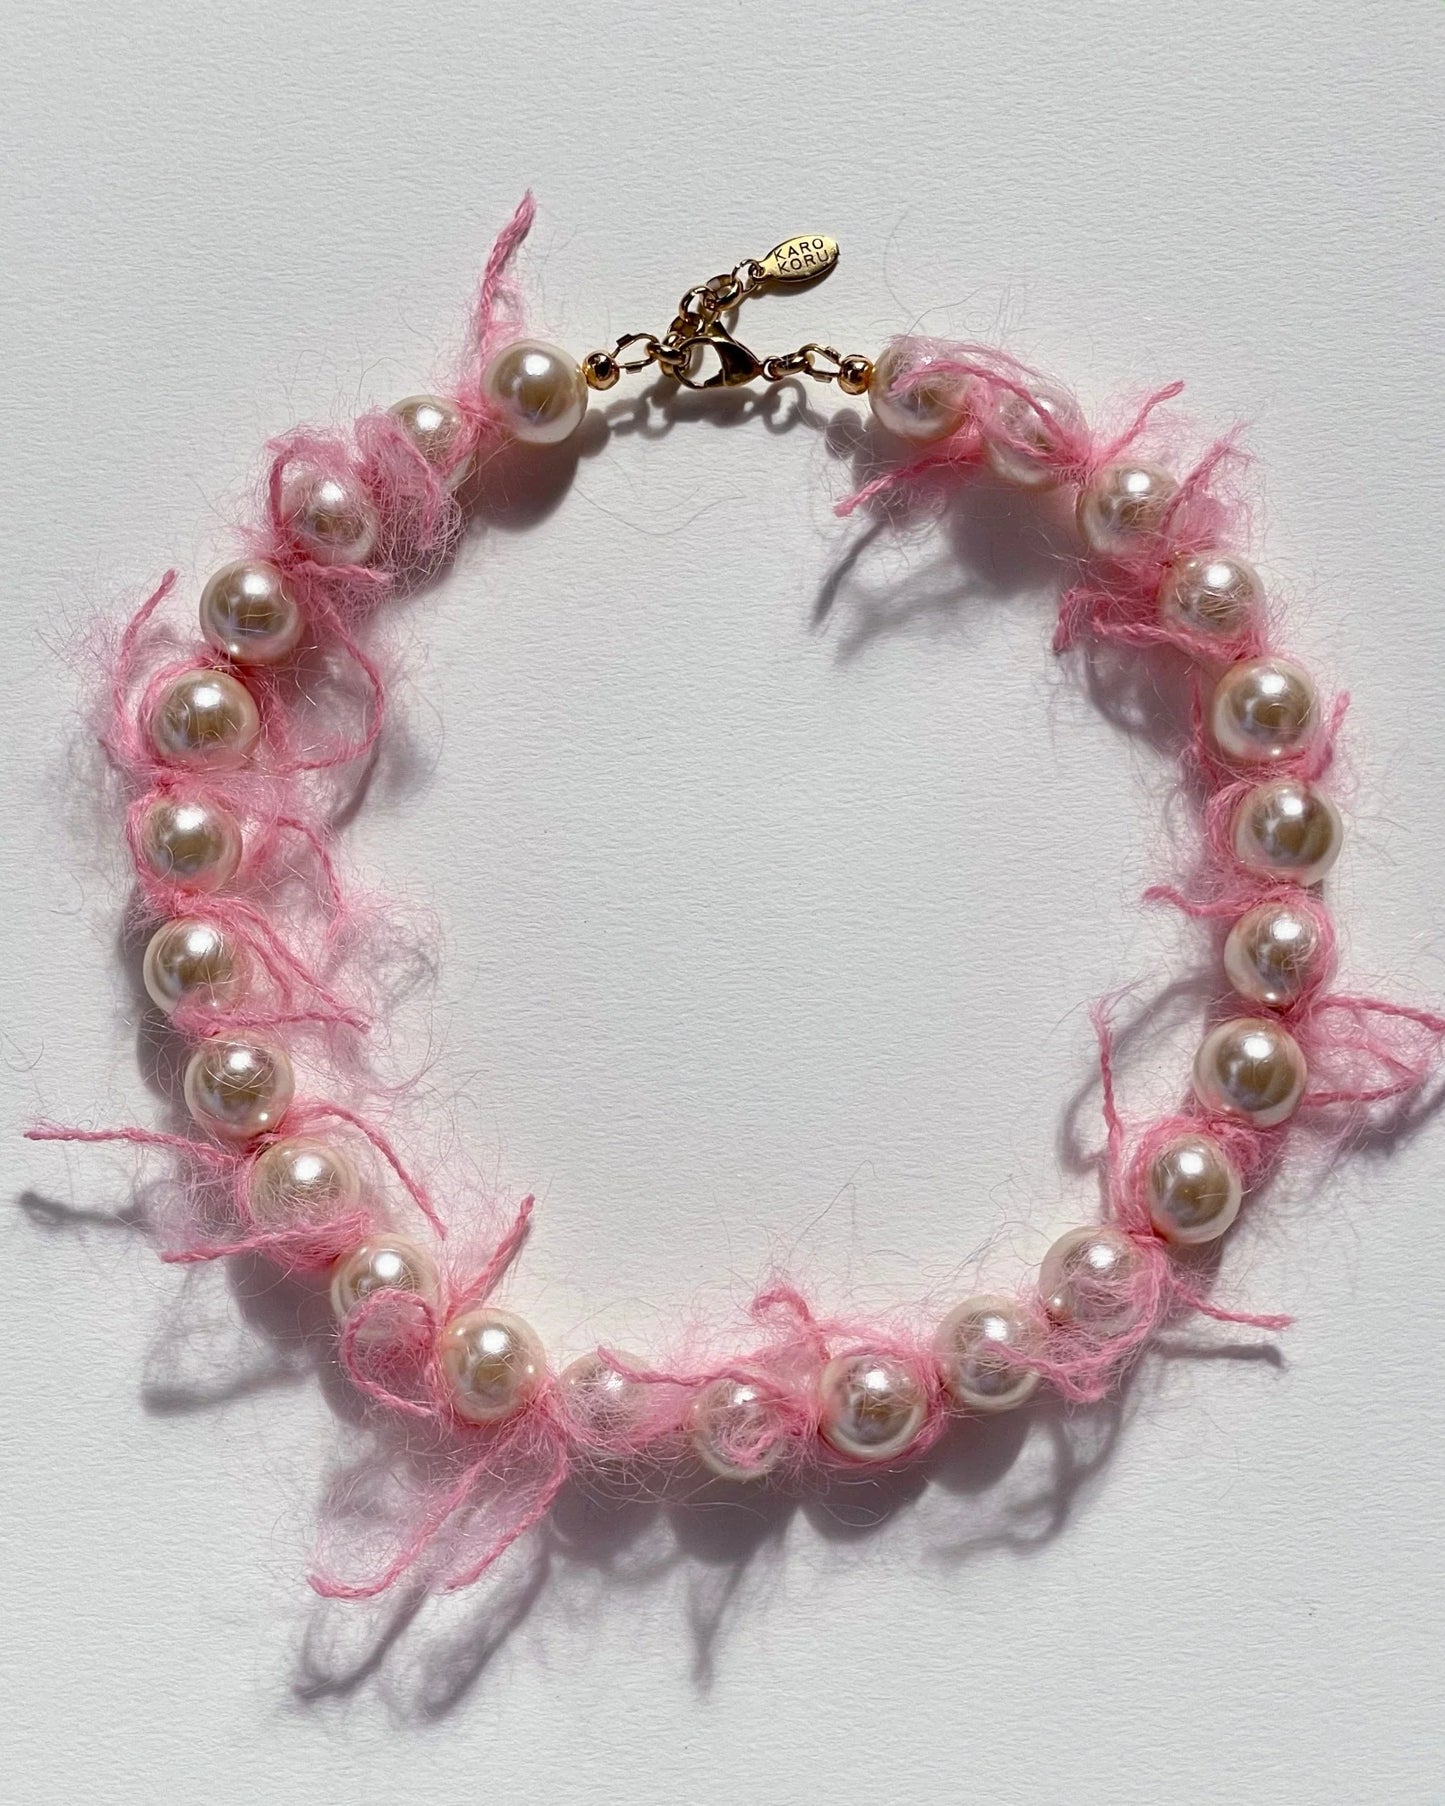 Collier de perles Mohair rose - Pink Mohair Necklace - Karo Koru